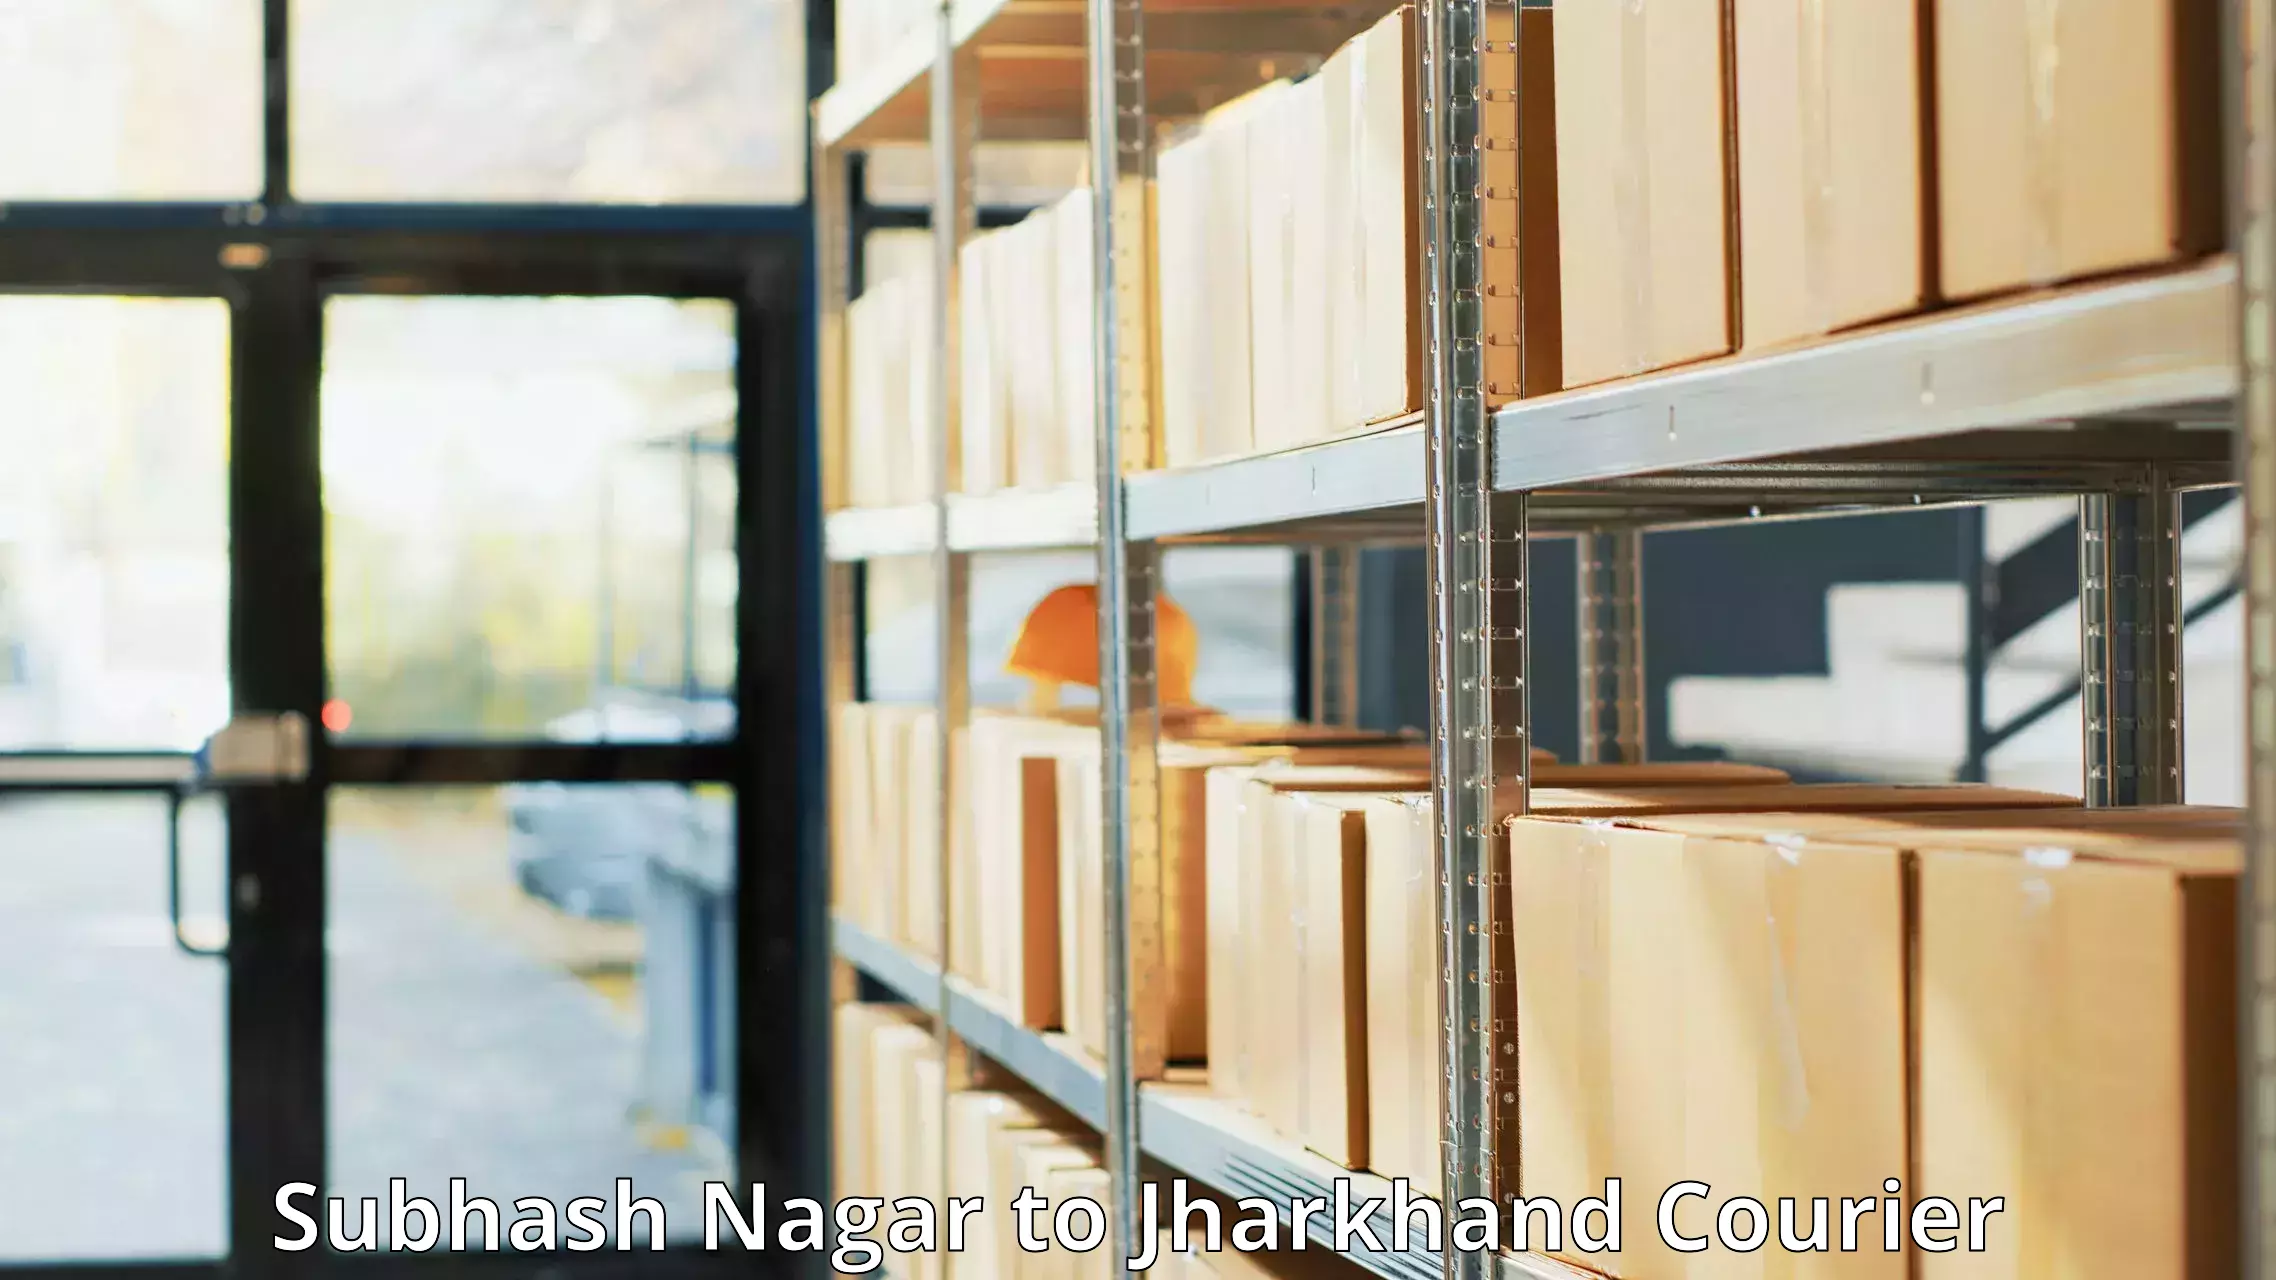 Next-generation courier services Subhash Nagar to Hazaribagh